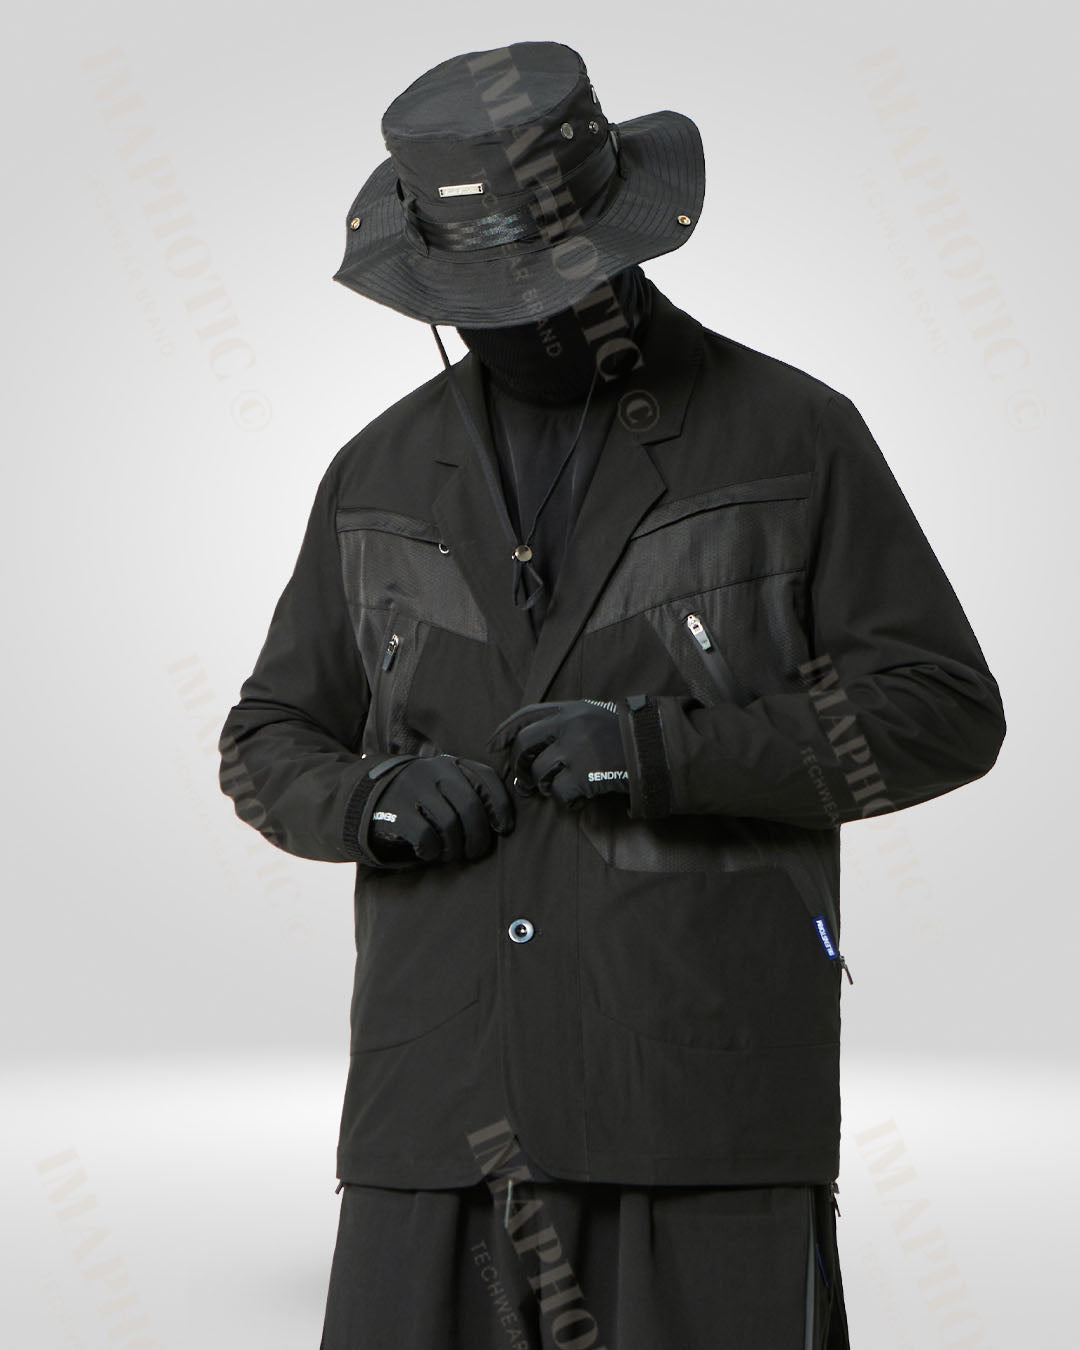 Waterproof Tactical blazer